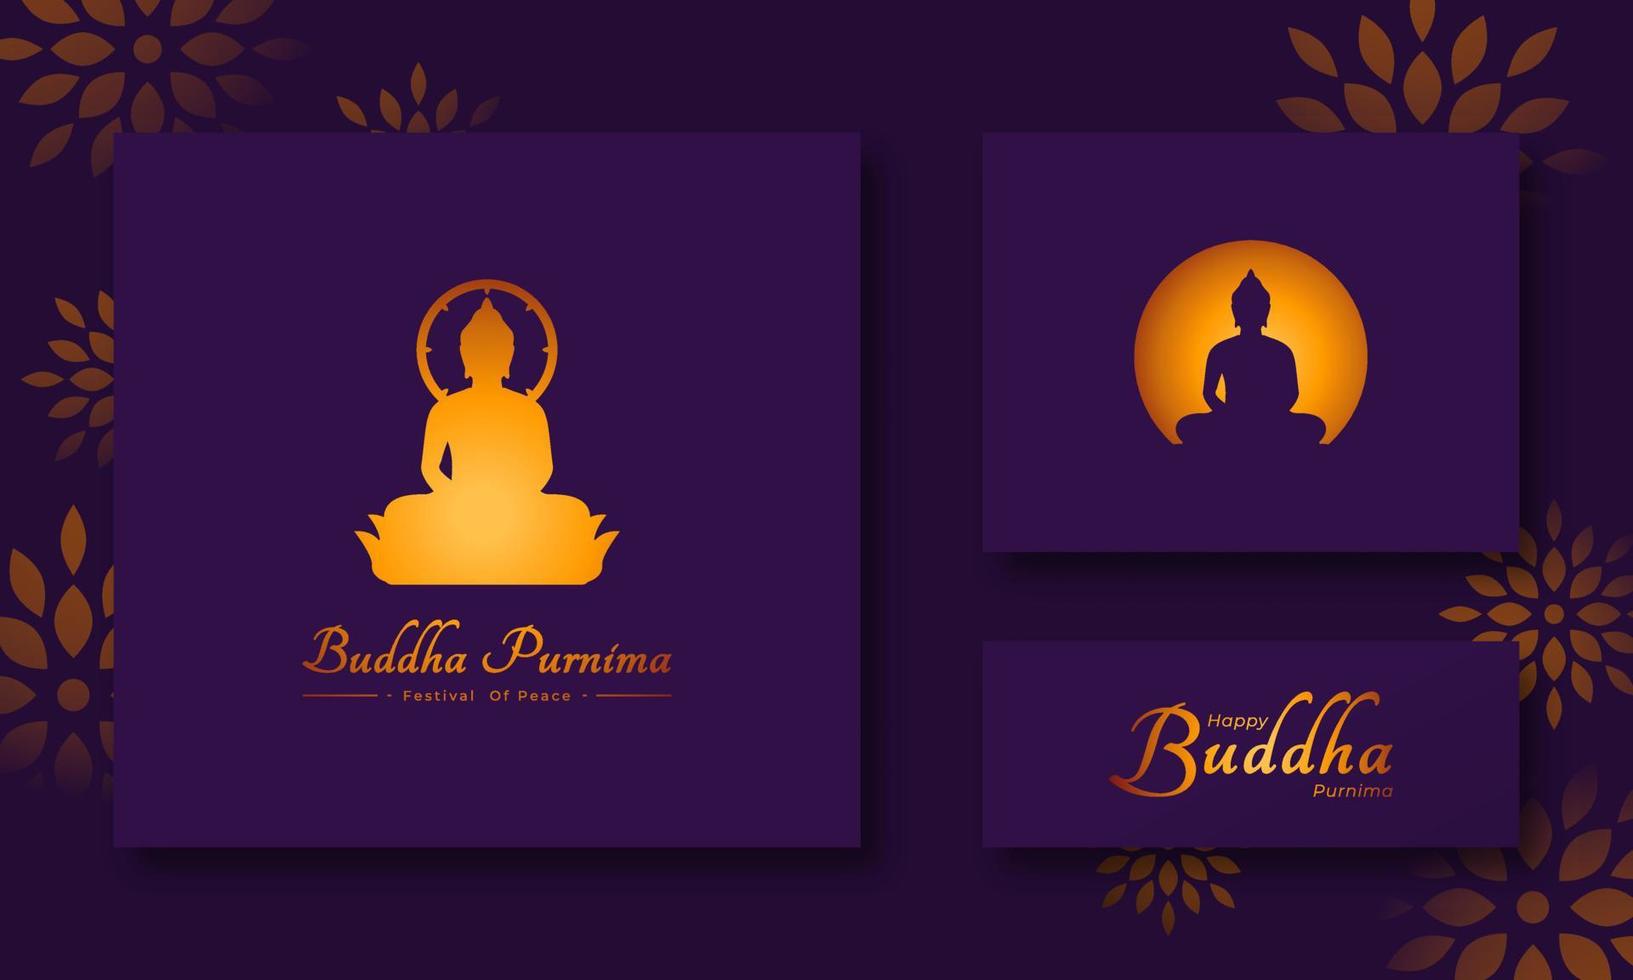 contento Buda purnima o vesak día budista festival para bandera, póster, volantes y antecedentes vector